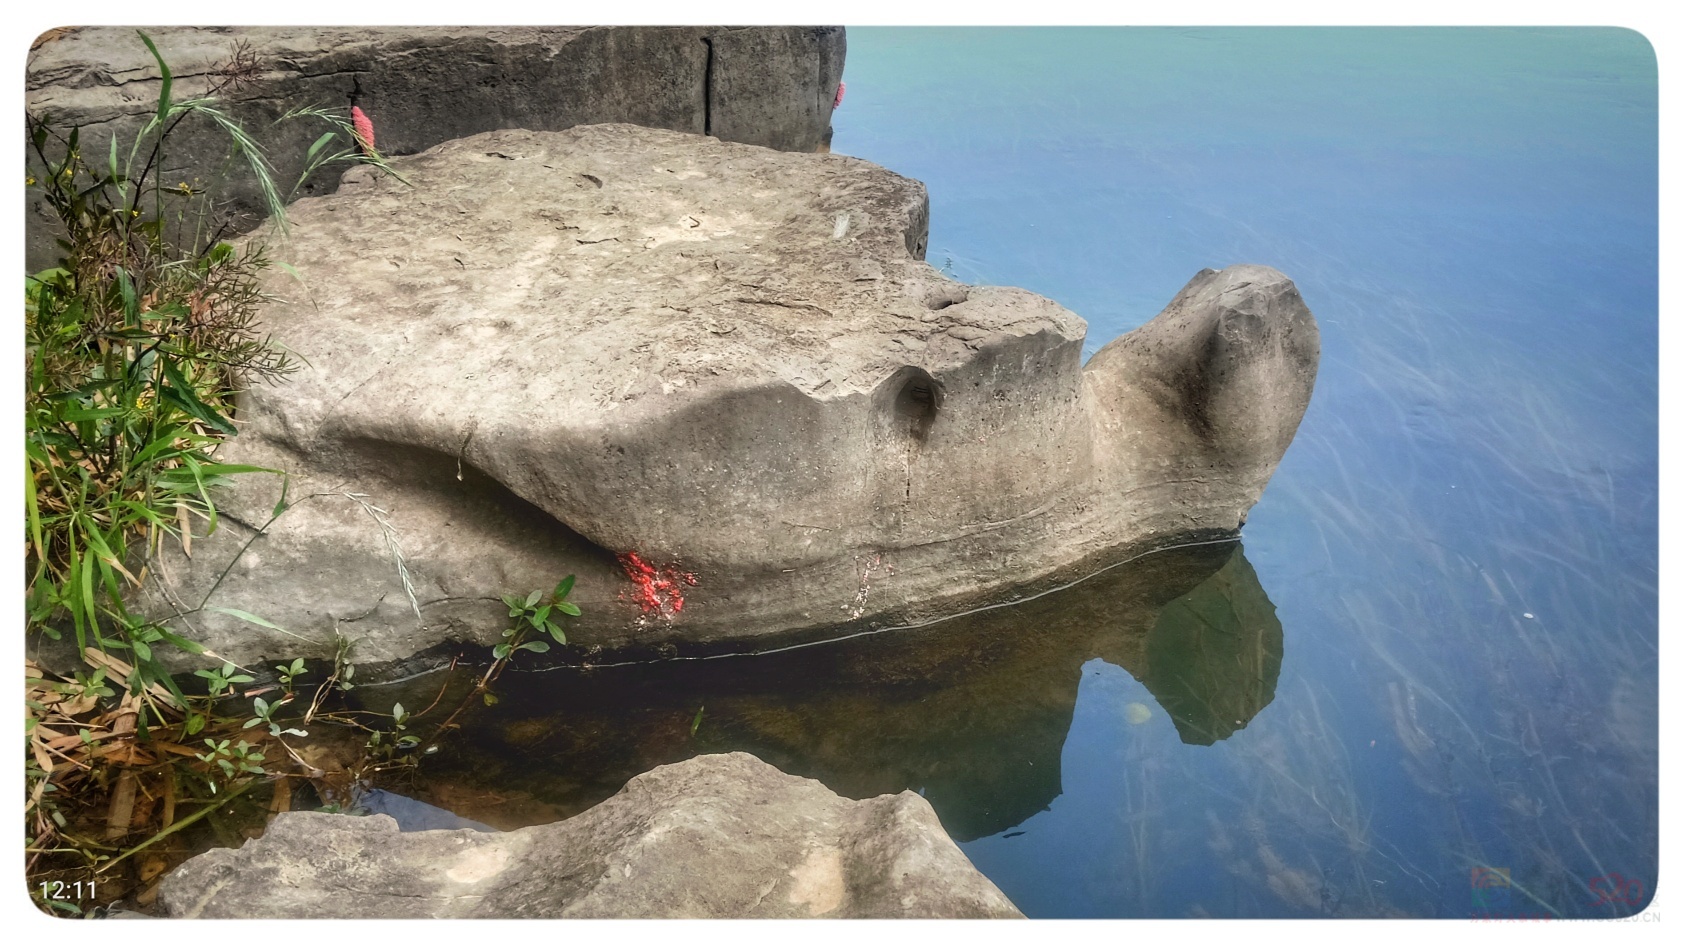 再次发现恭城河边的另一处“石龟”:541 / 作者:陈爱国 / 帖子ID:294693